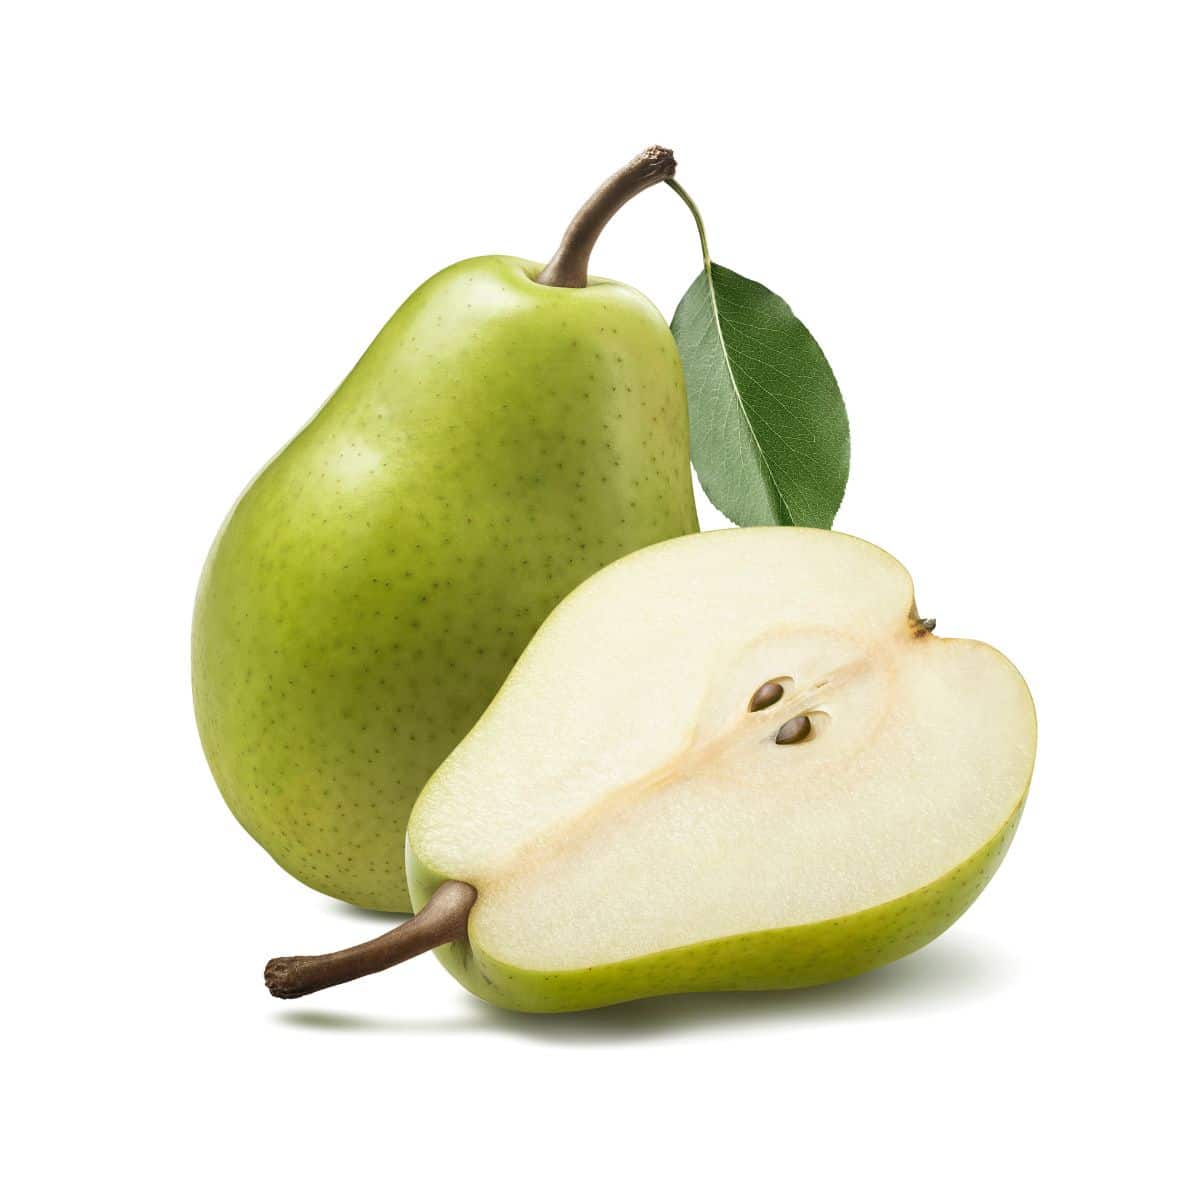 Green adjou pear on a white background.